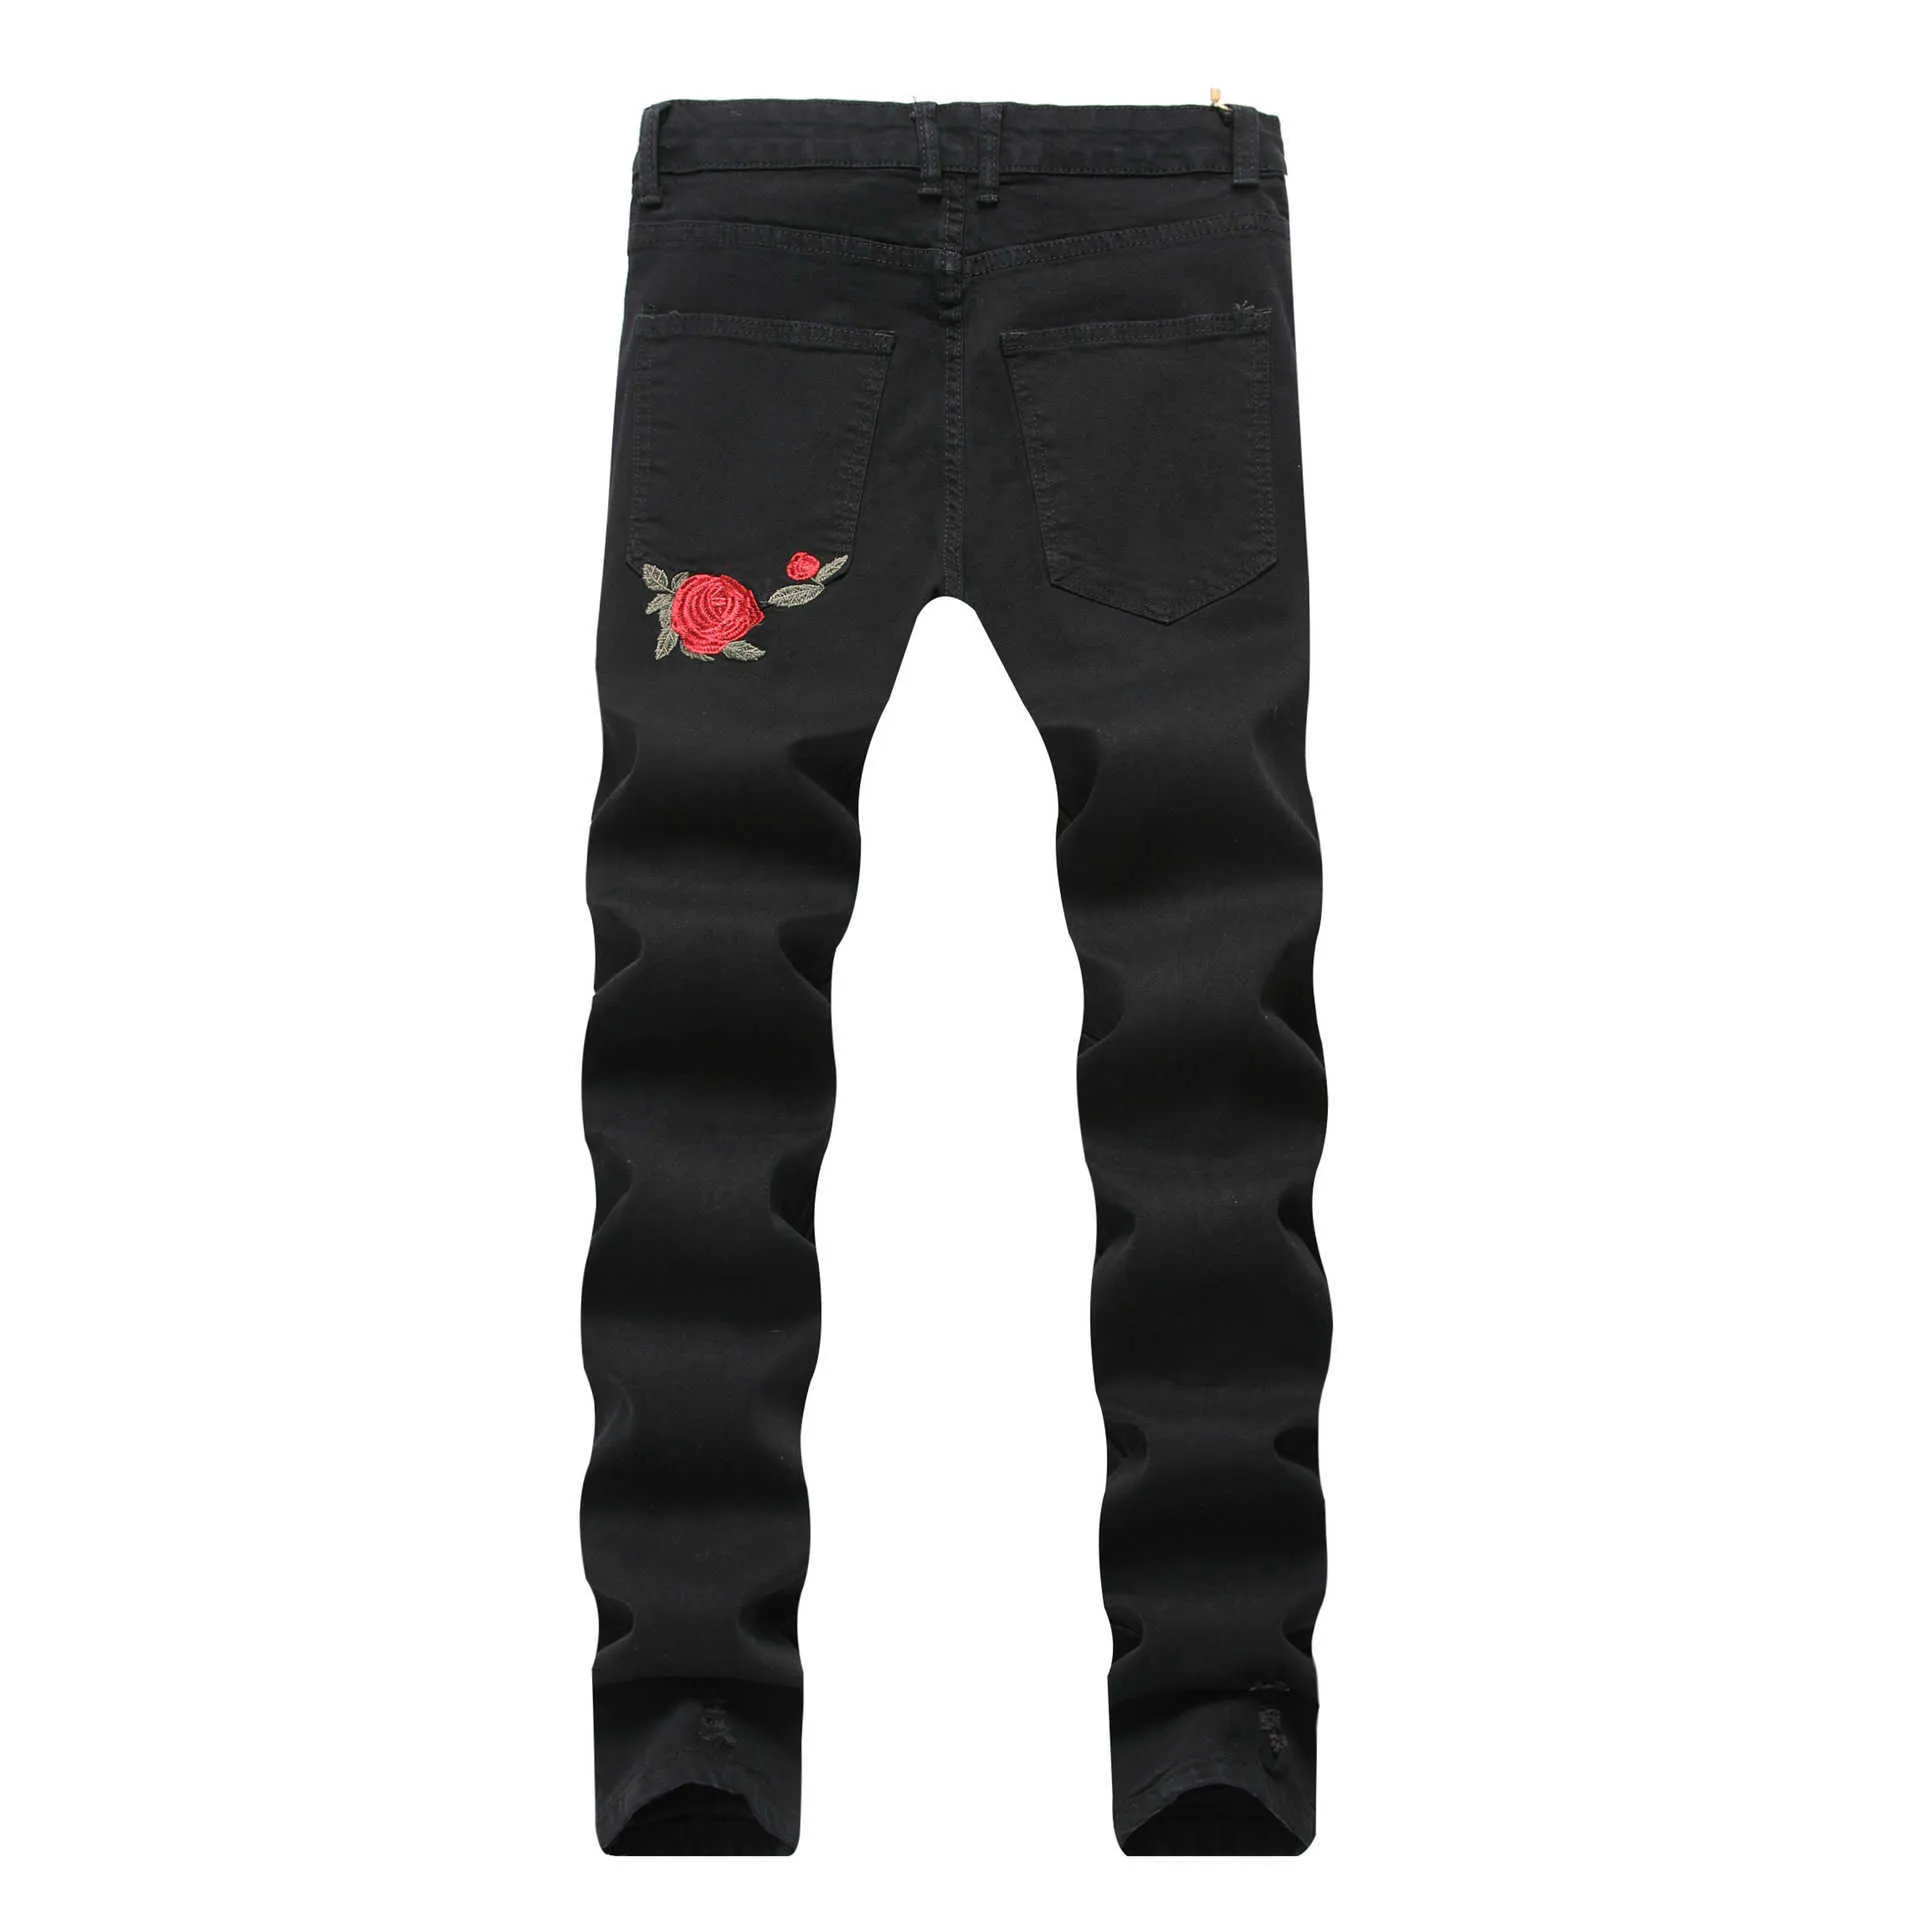 Vomint New Black Ripped Jeans avec broderie hommes avec des fleurs Rose brodé Denim Jeans Stretch Skinny Jeans Pantalon Y0927